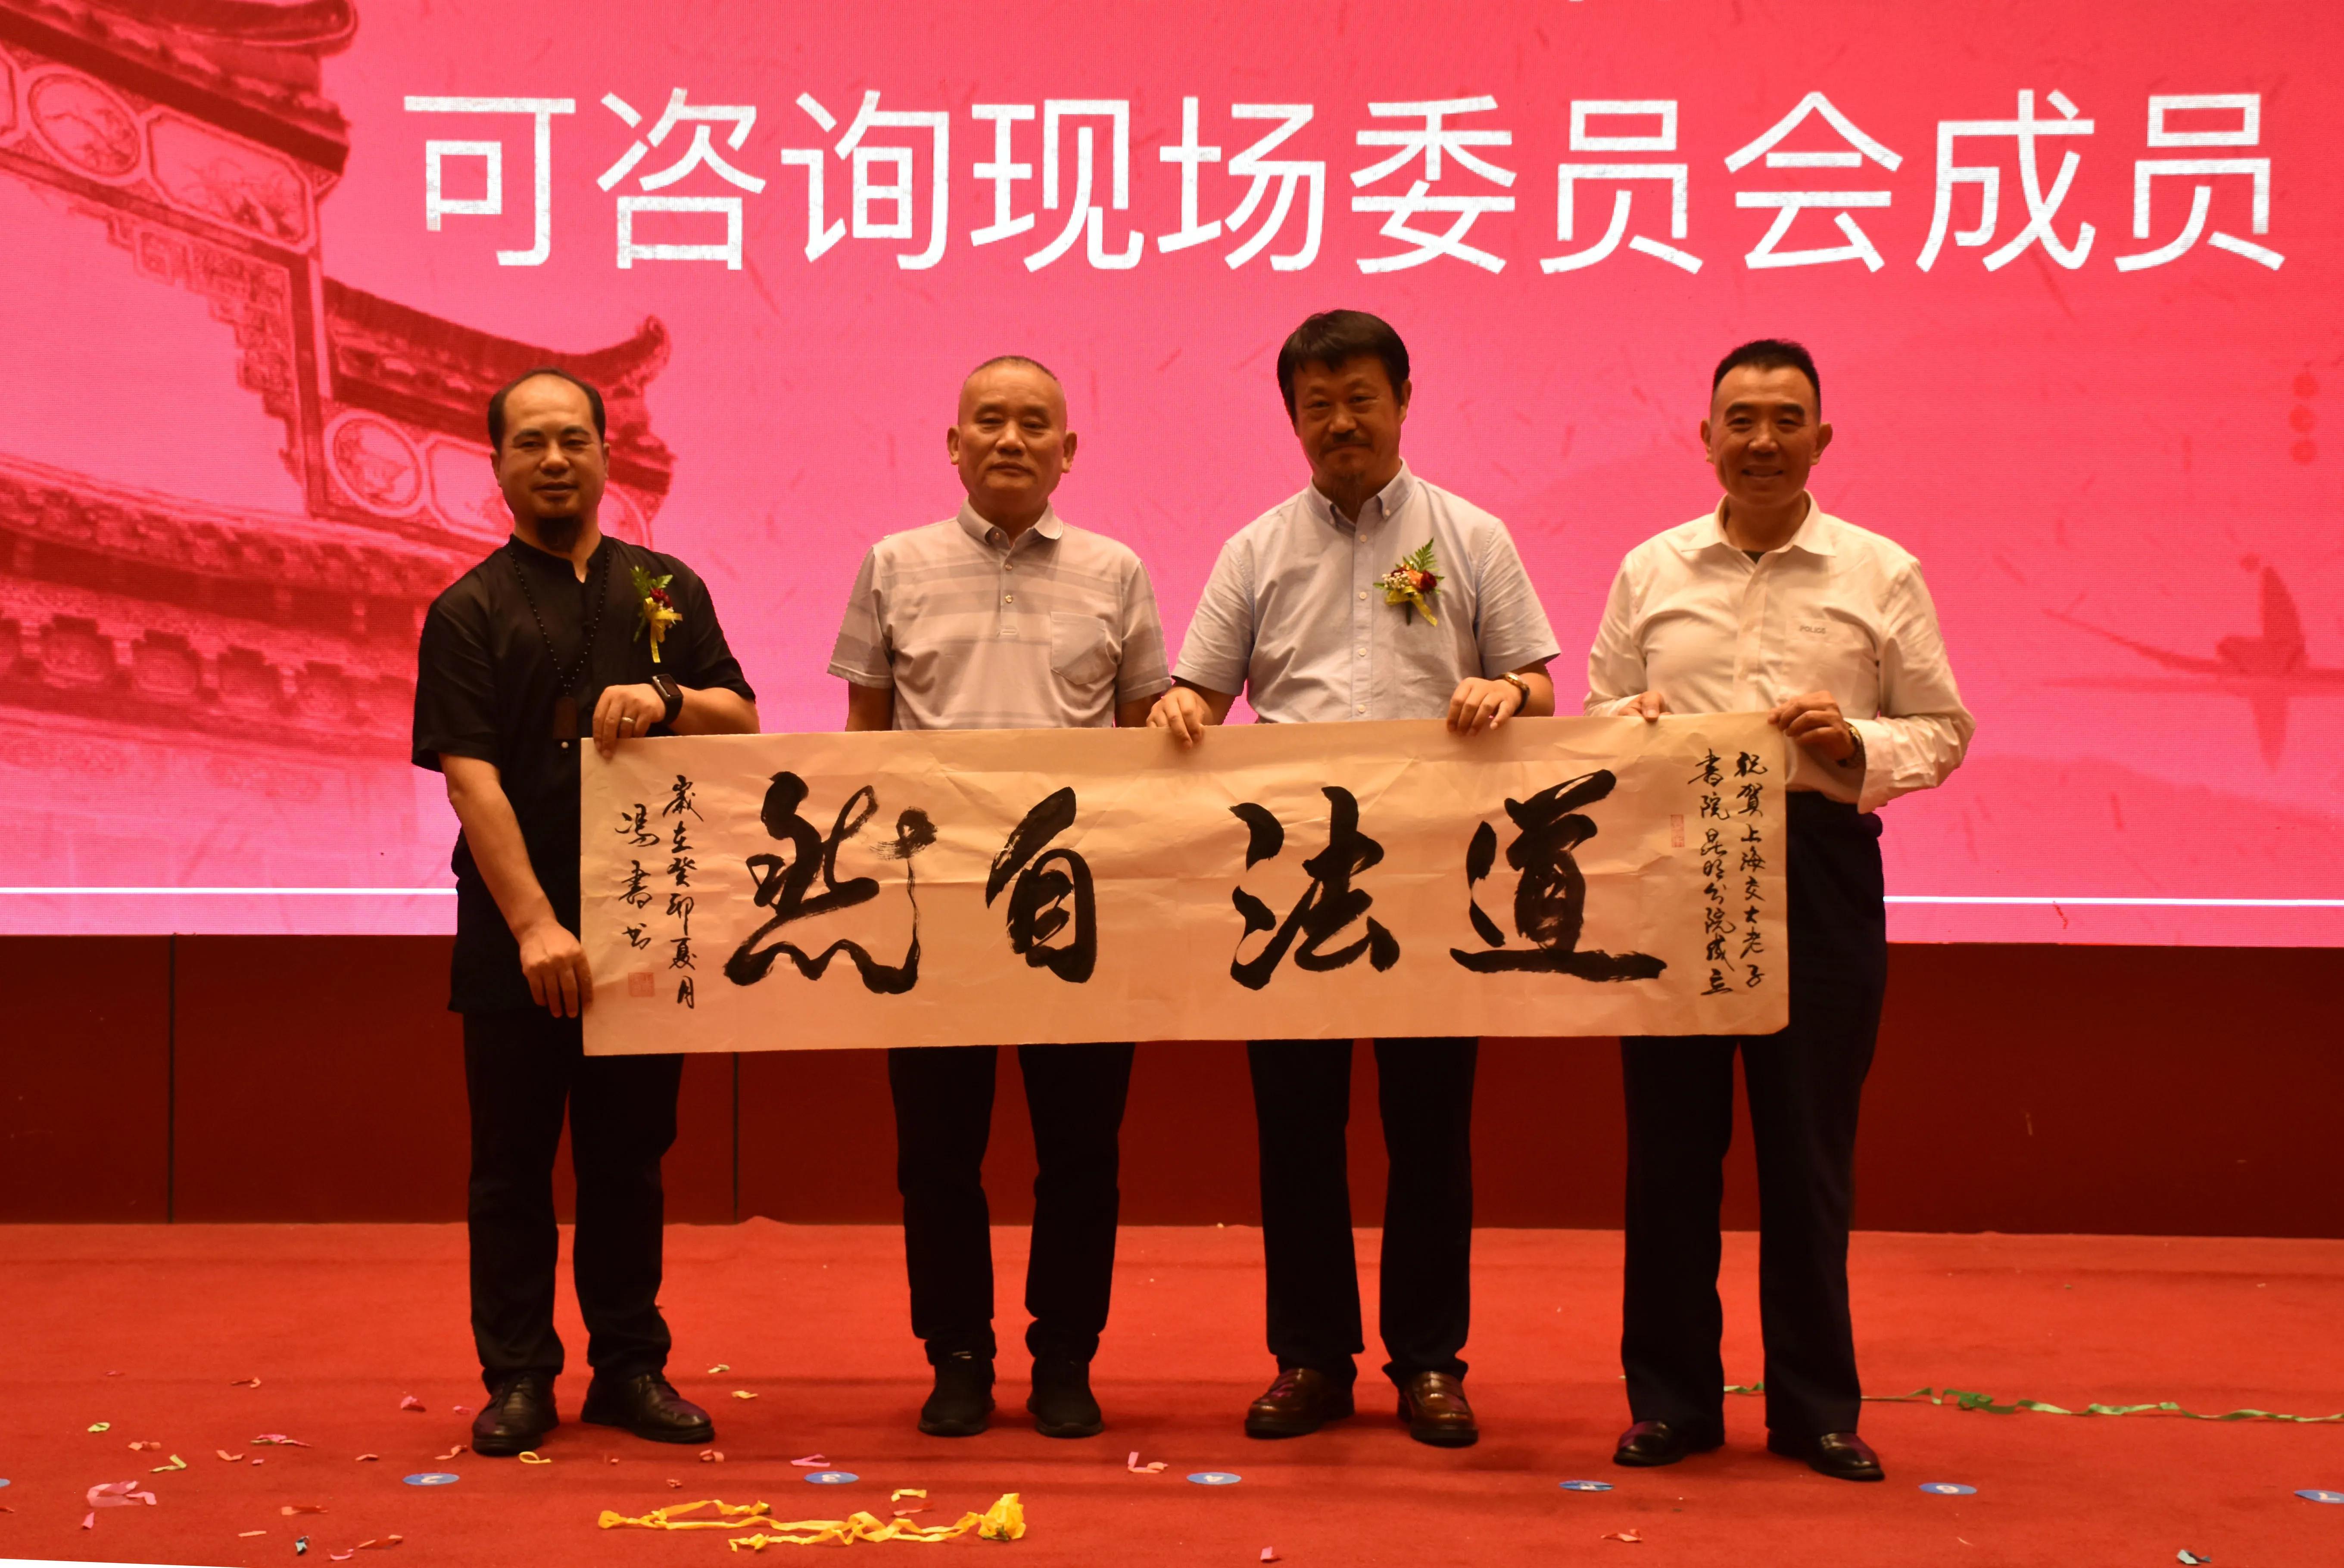 上海交大老子书院昆明分院揭牌仪式在昆明举行